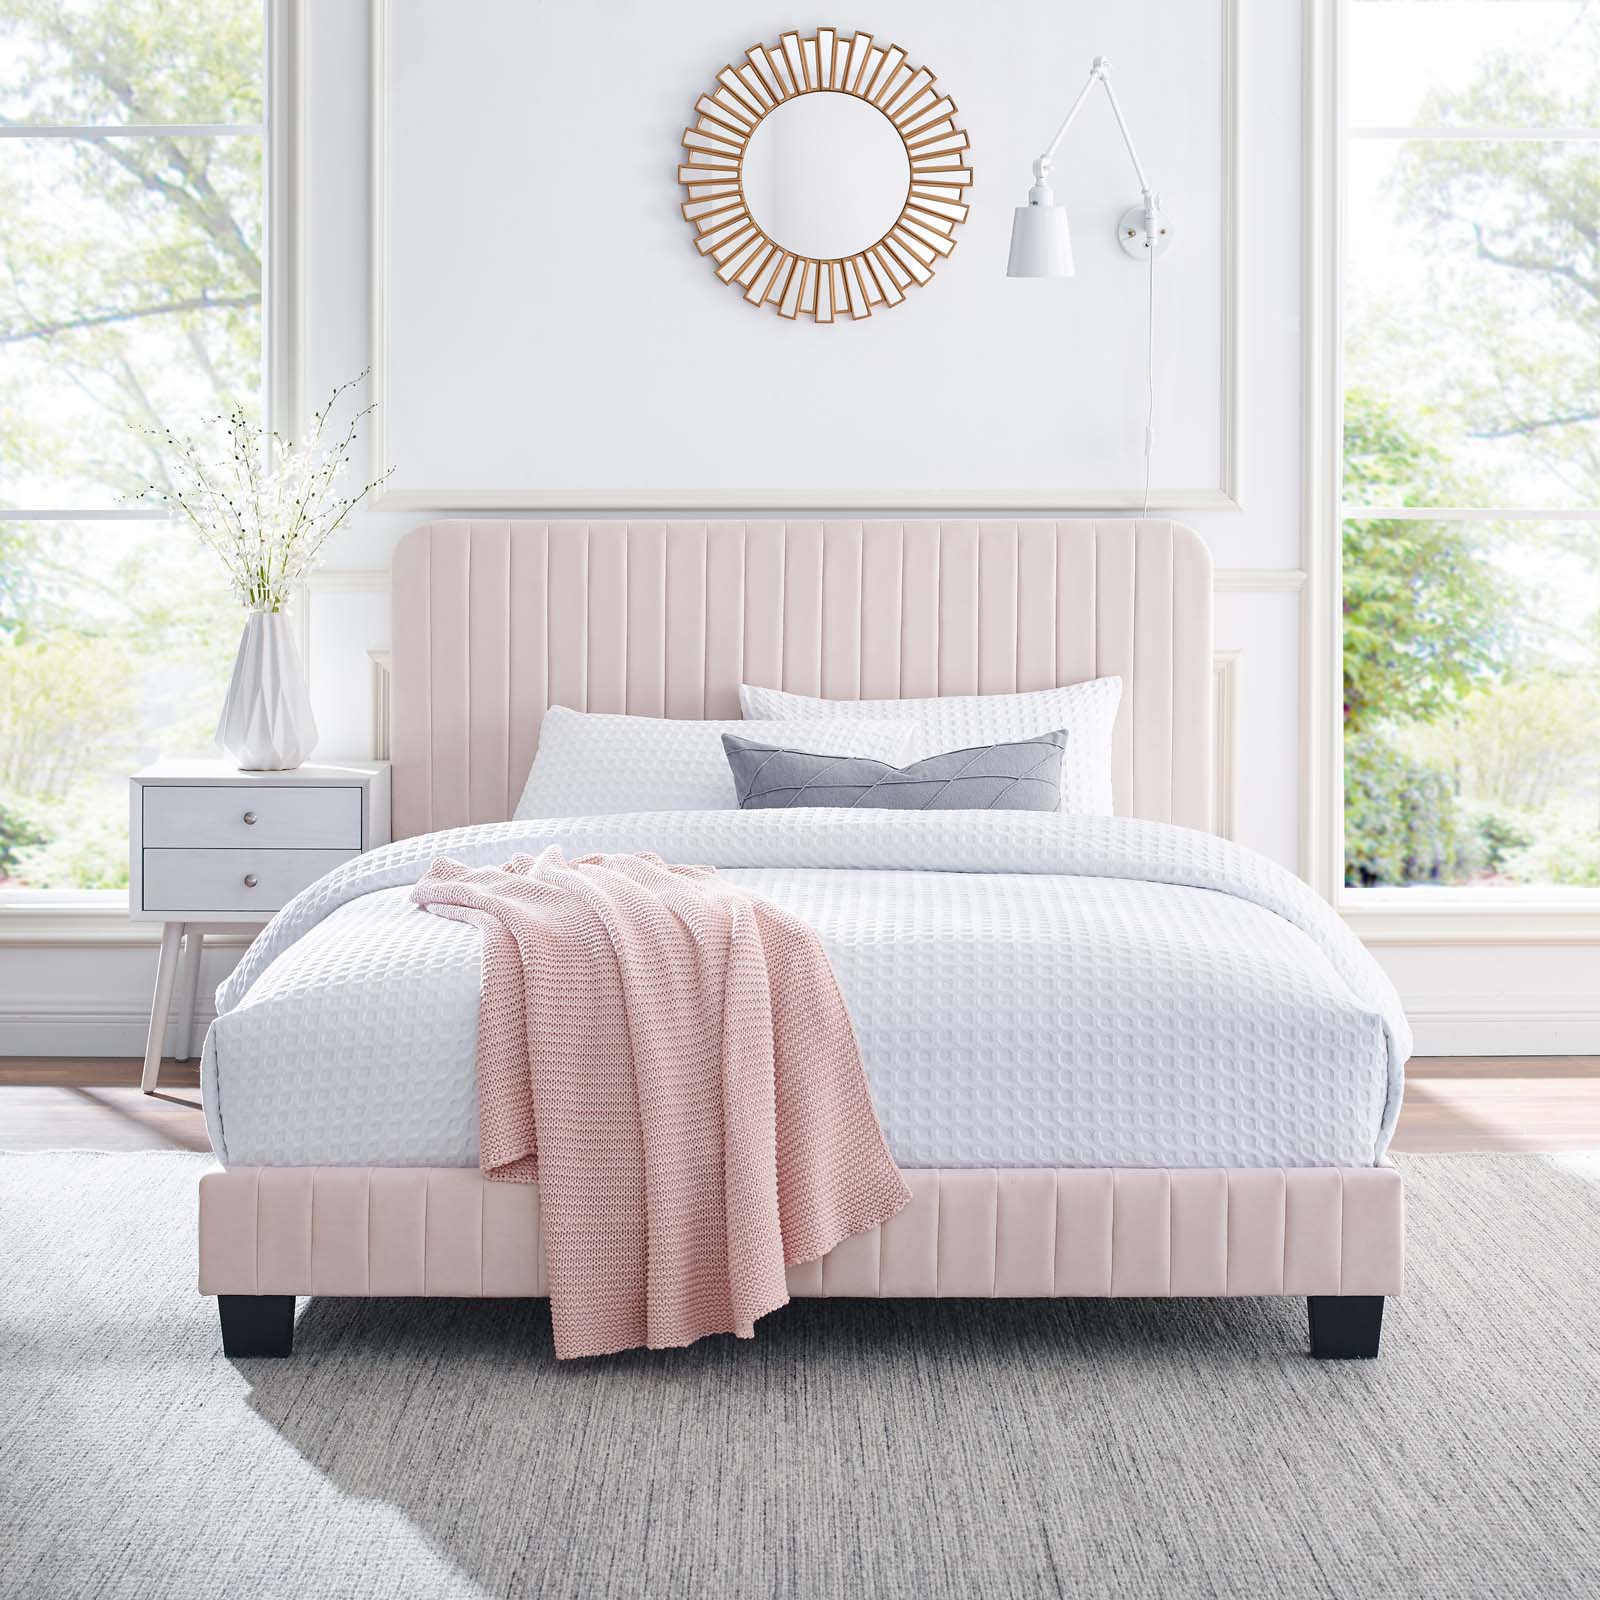 Tufted Platform Bed Frame, King Size, Velvet, Pink, Modern Contemporary Urban Design, Bedroom Master Guest Suite - image 2 of 8